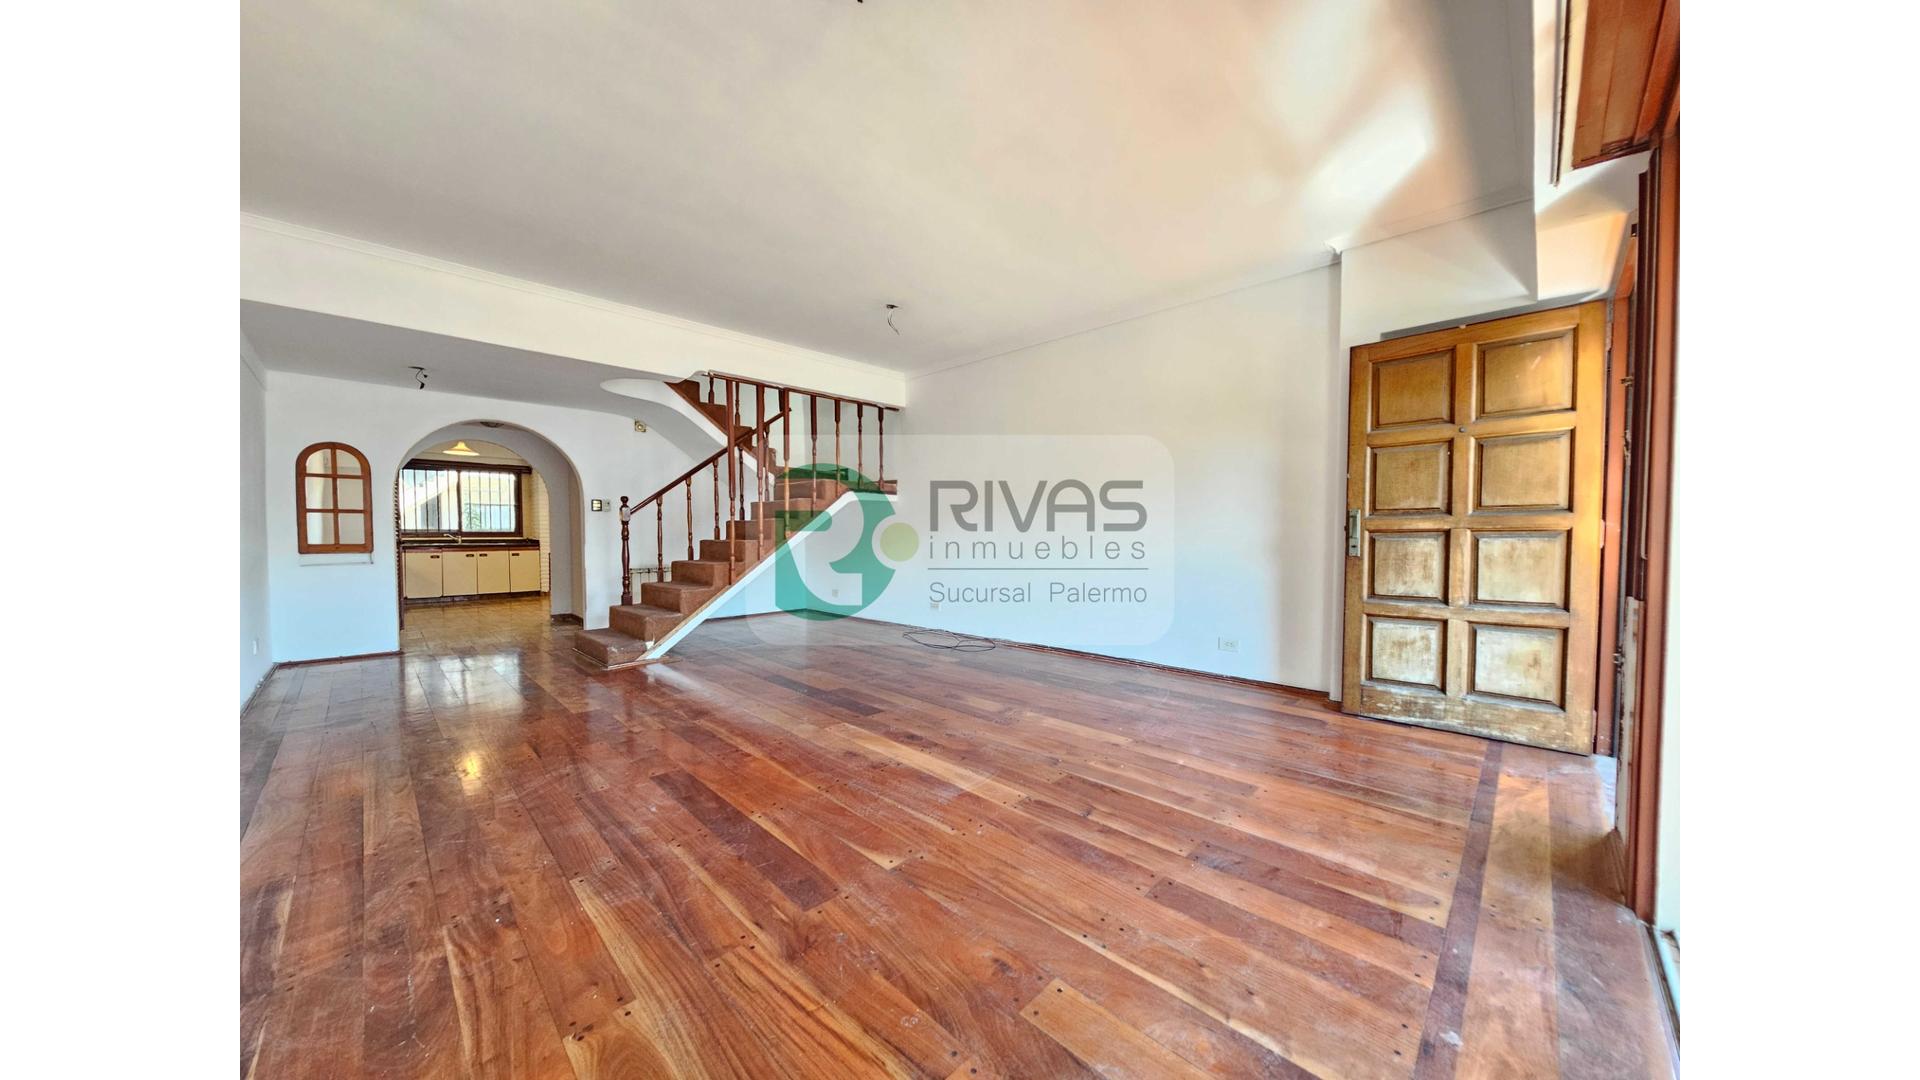 #4915387 | Venta | Departamento | Villa Luro (Rivas Inmuebles)